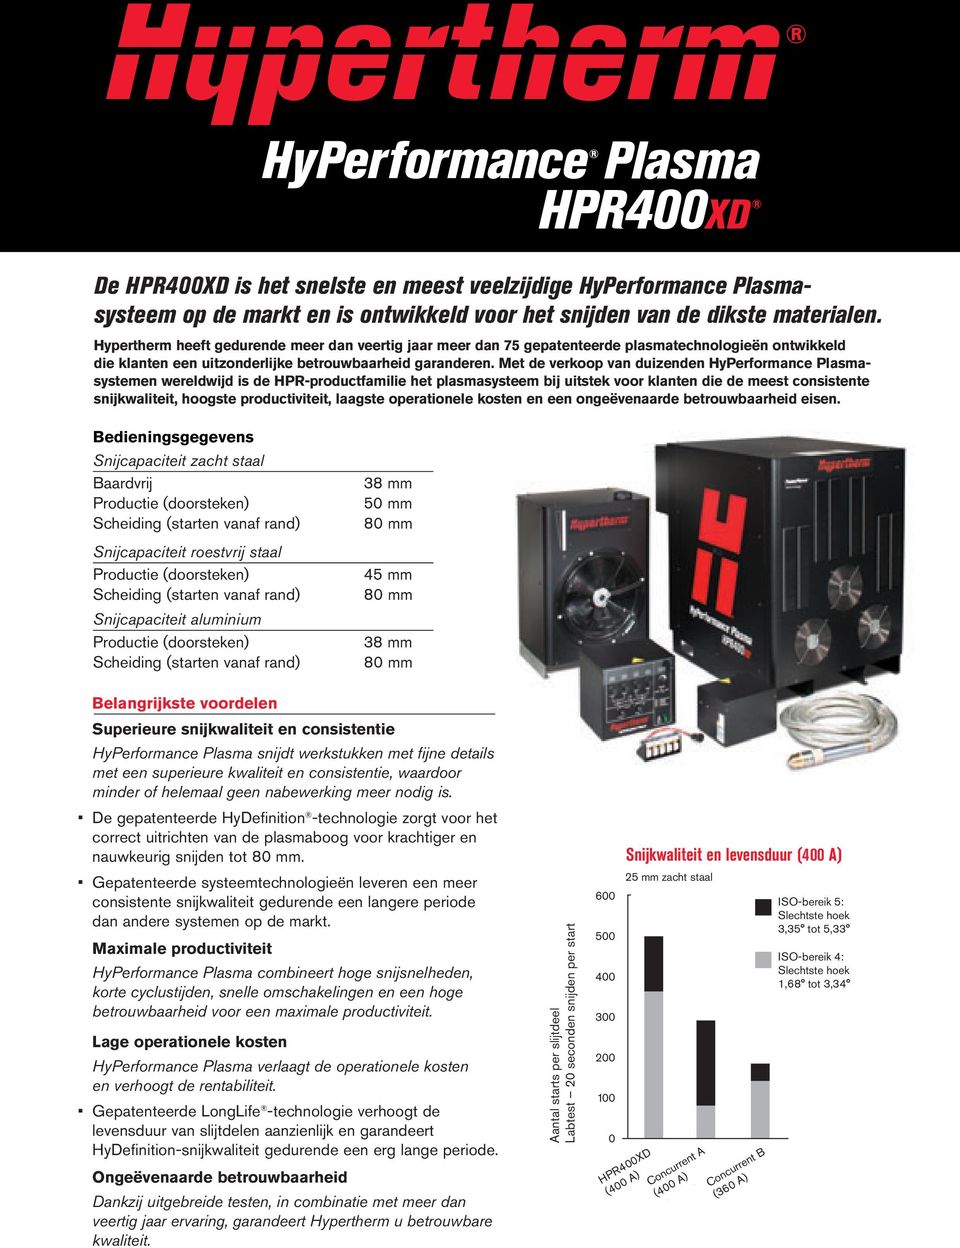 Met de verkoop van duizenden HyPerformance Plasmasystemen wereldwijd is de HPR-productfamilie het plasmasysteem bij uitstek voor klanten die de meest consistente snijkwaliteit, hoogste